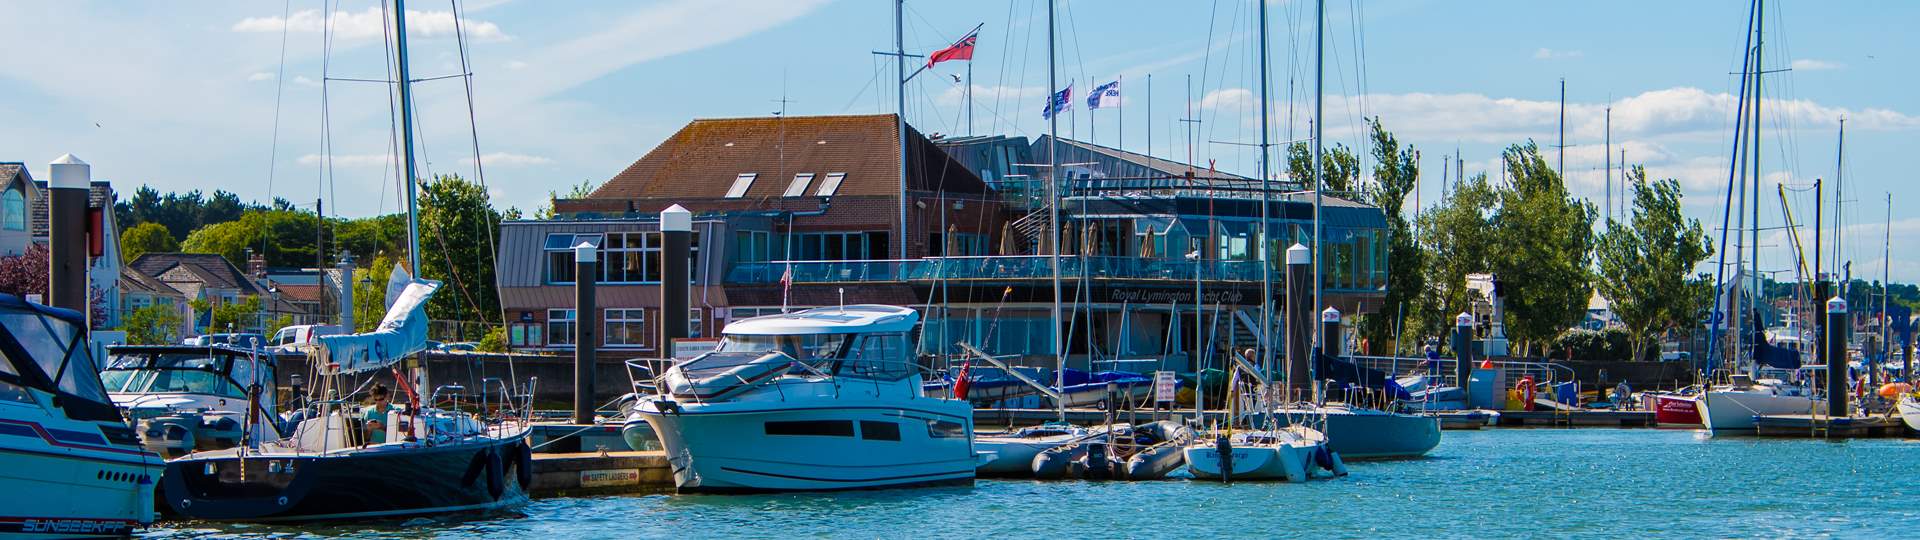 the royal lymington yacht club